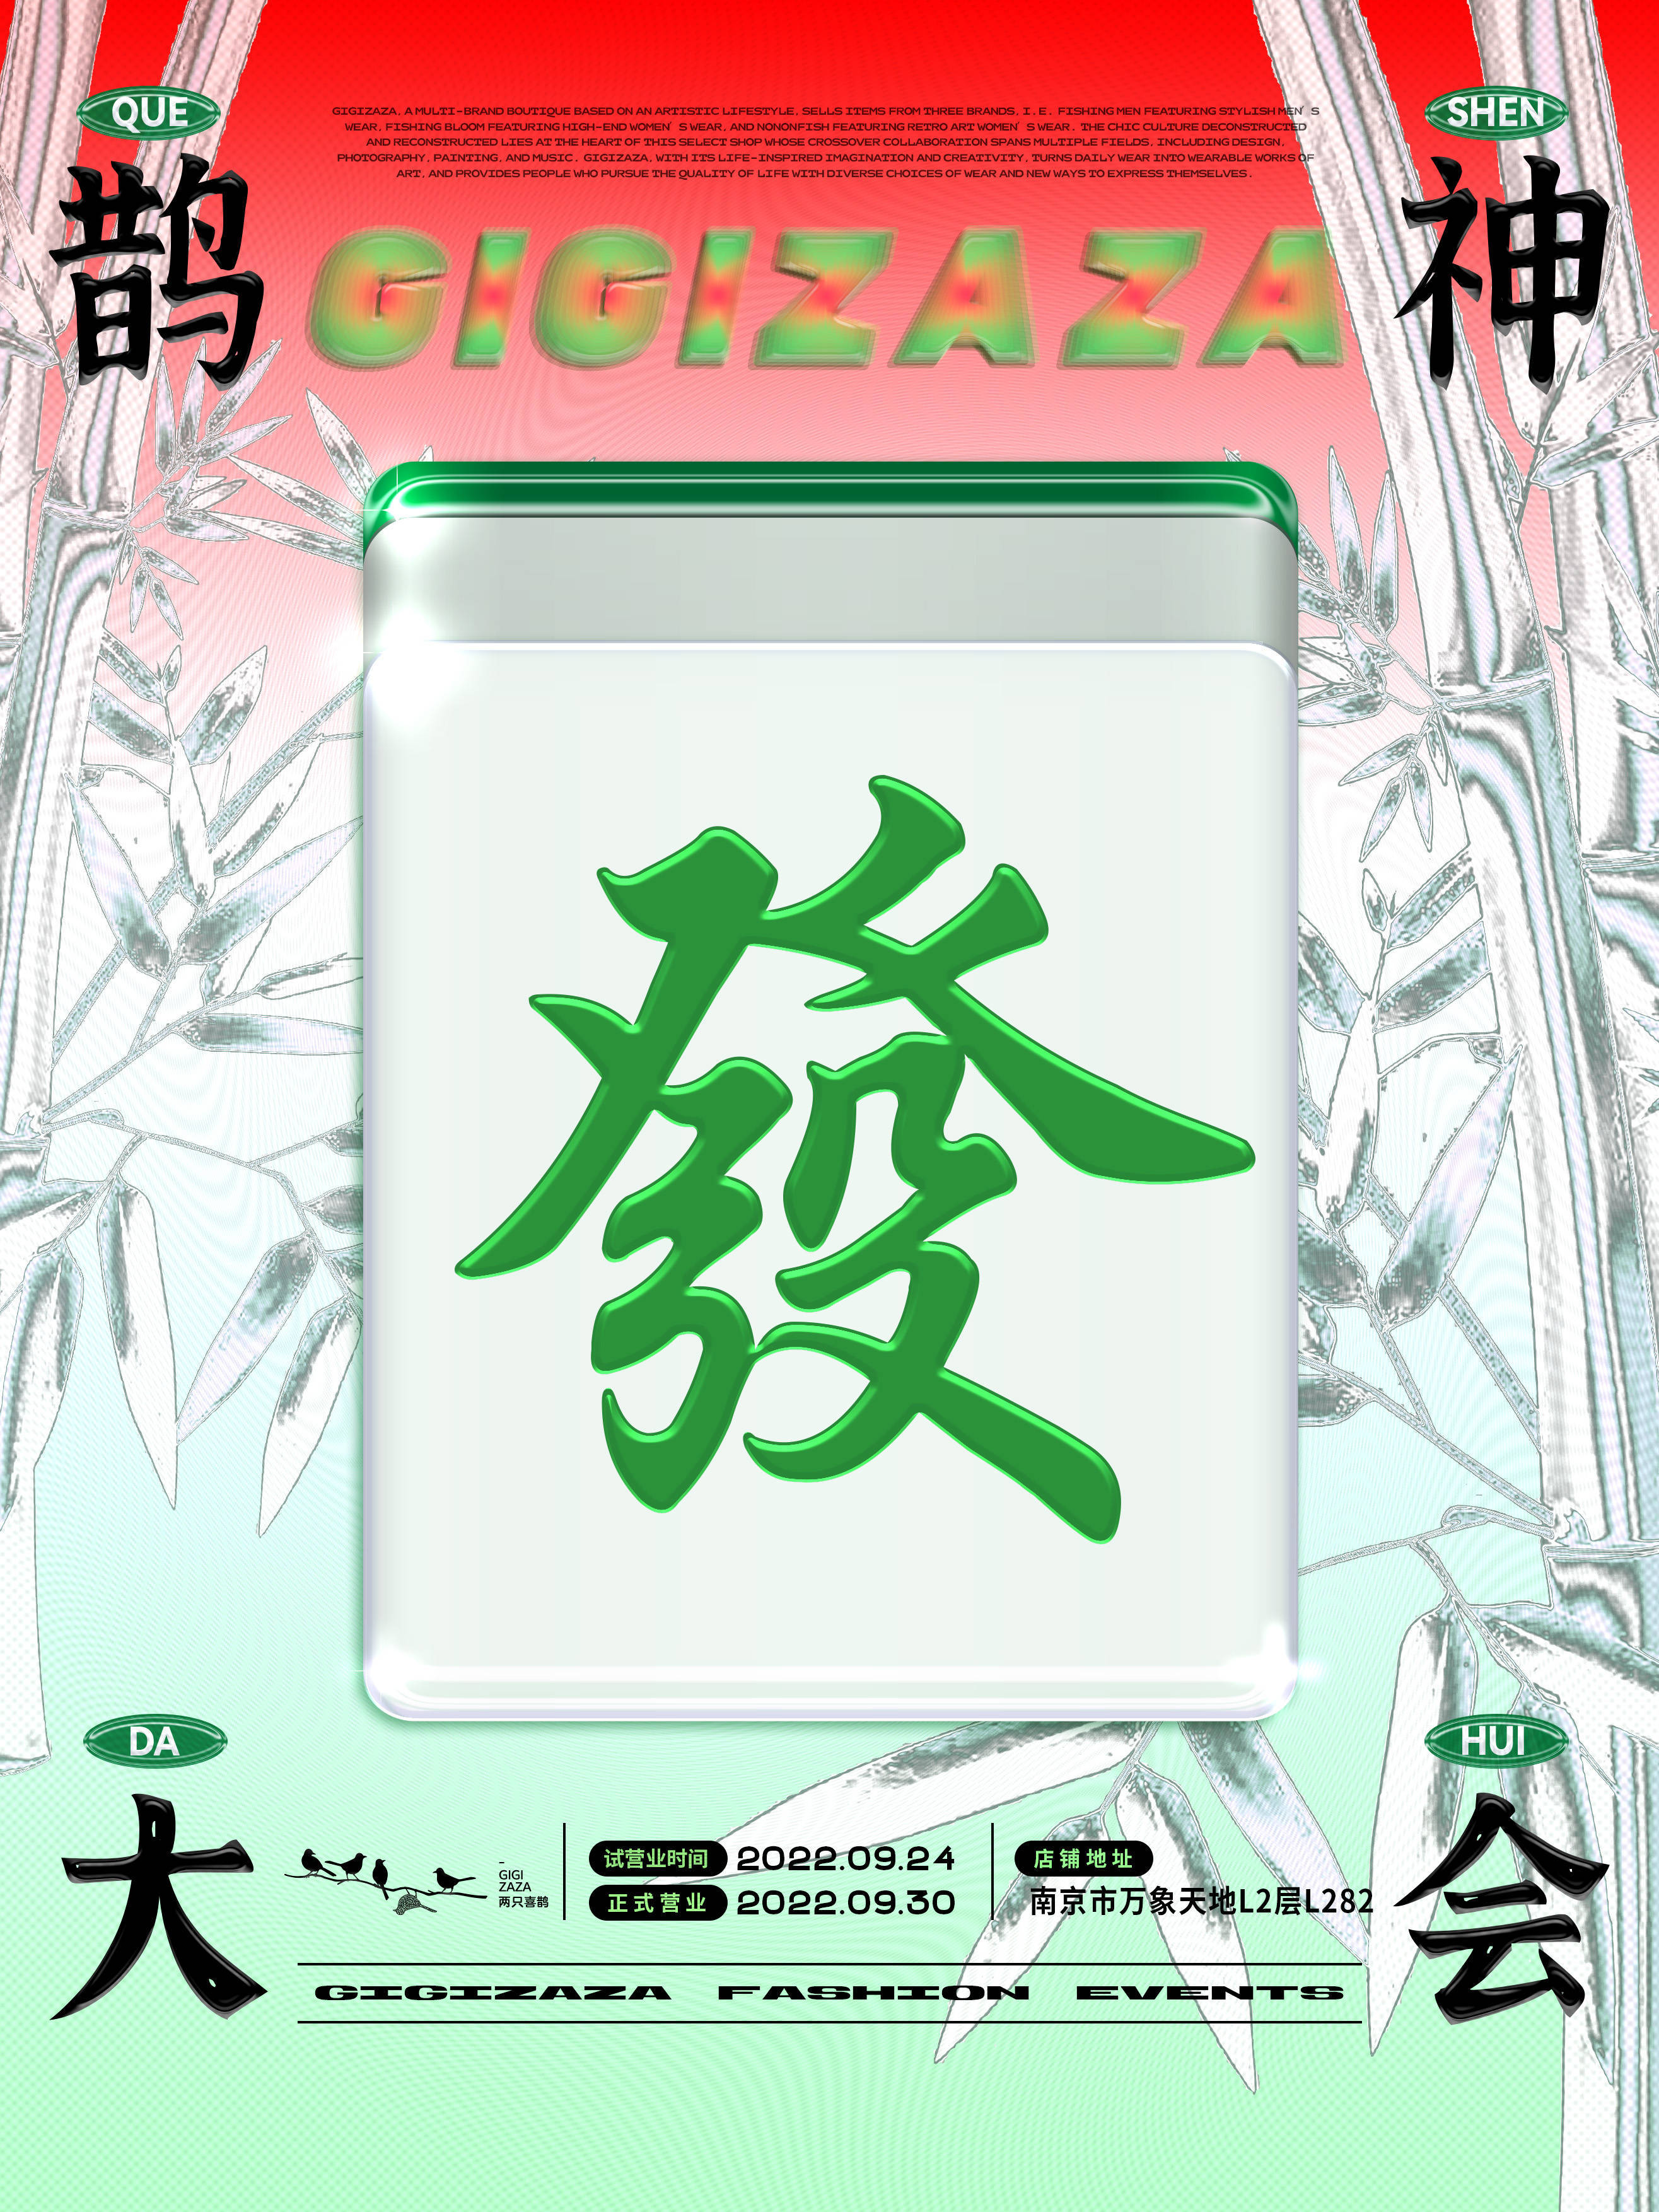 两只喜鹊GIGIZAZA中国南京首店盛装启幕图片